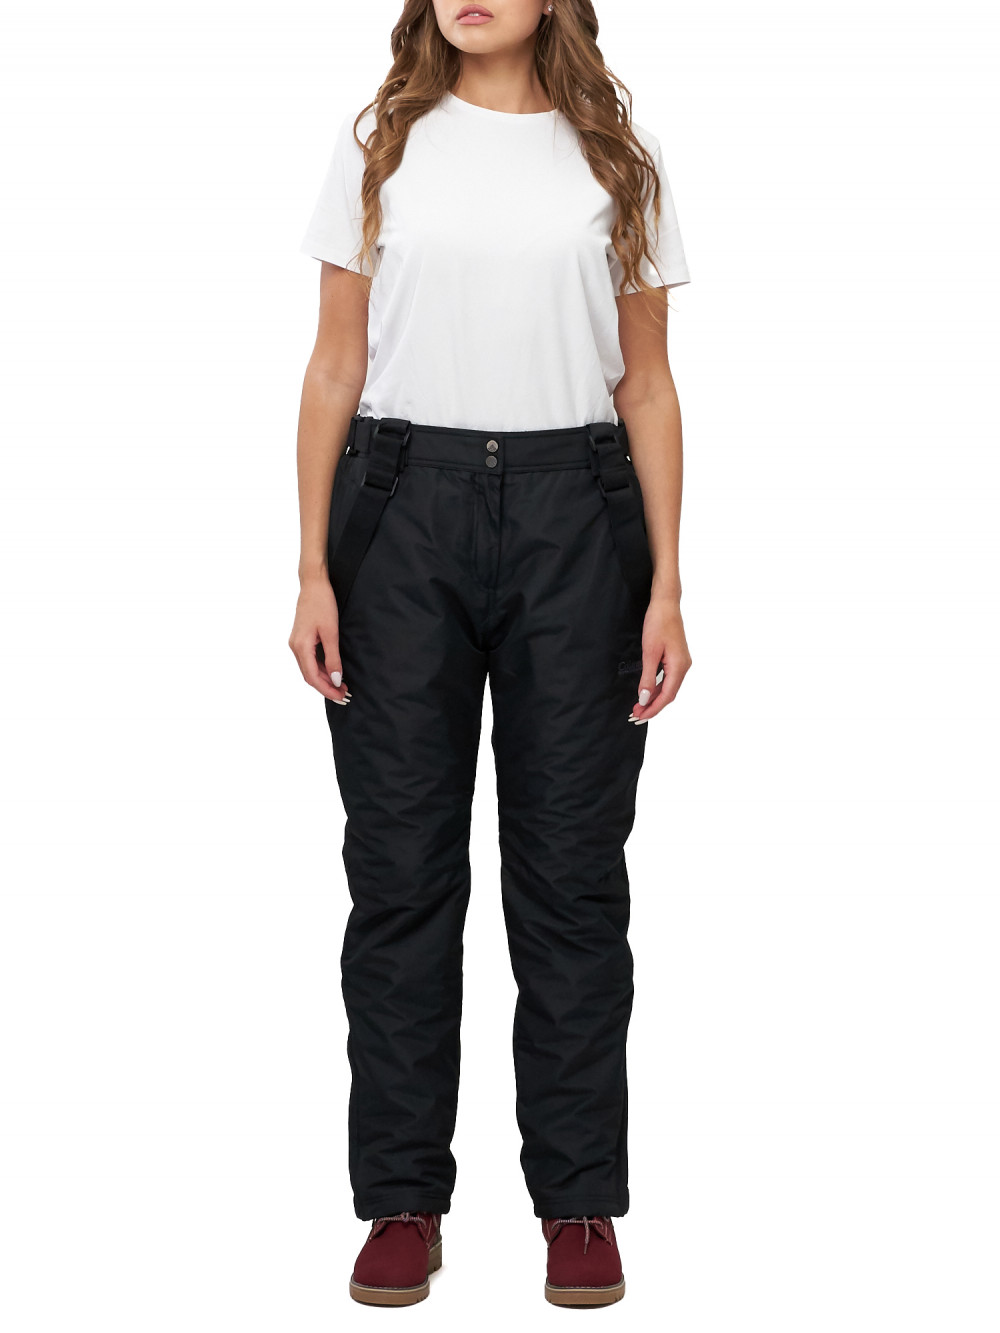 Полукомбинезон брюки горнолыжные женские big size AD66413Ch черного цвета, 56